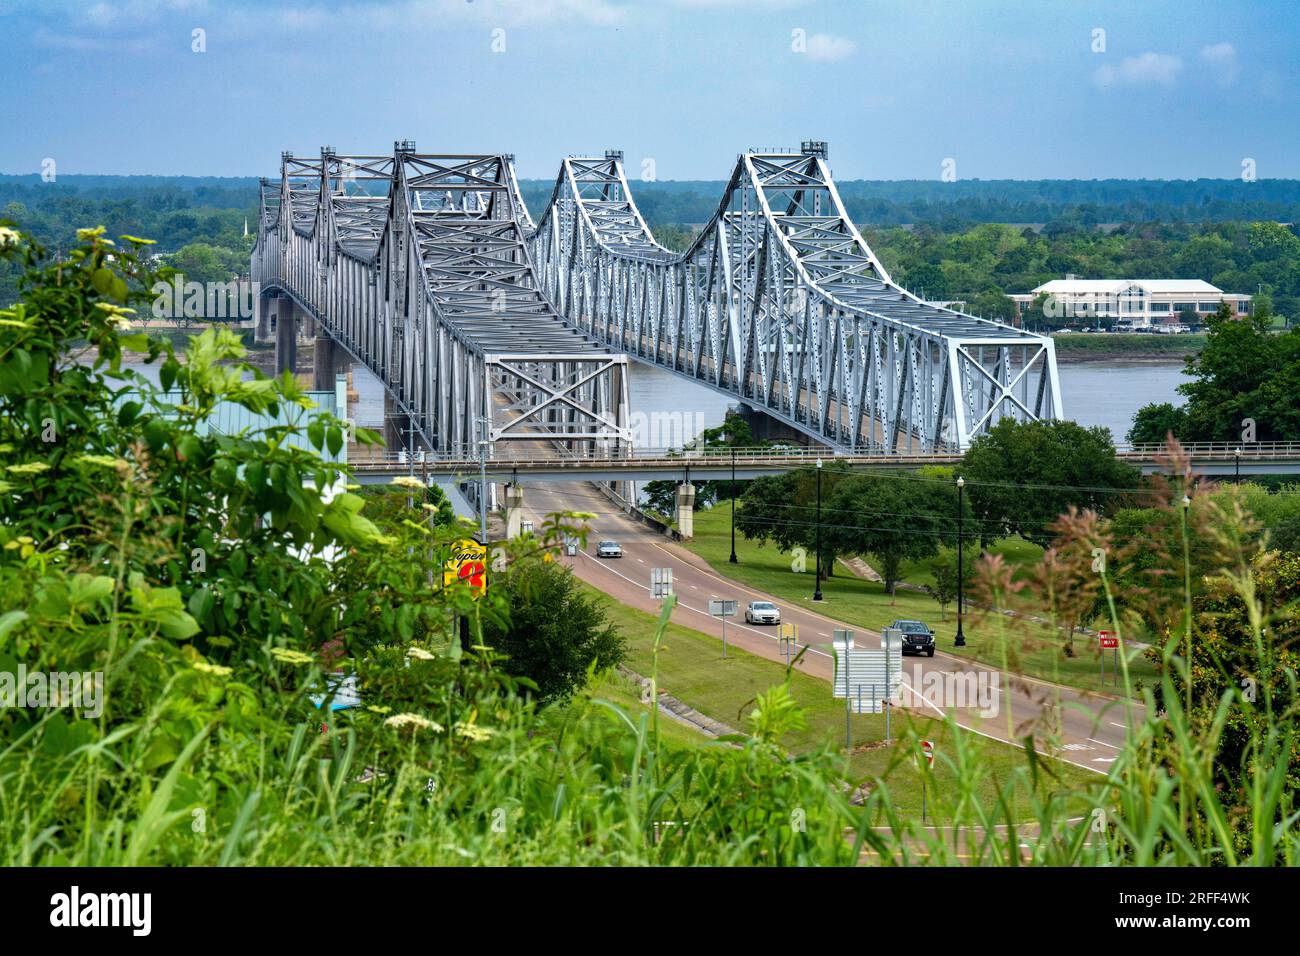 United States, Mississippi, Natchez, Natchez-Vidalia Bridge over the Mississippi River Stock Photo